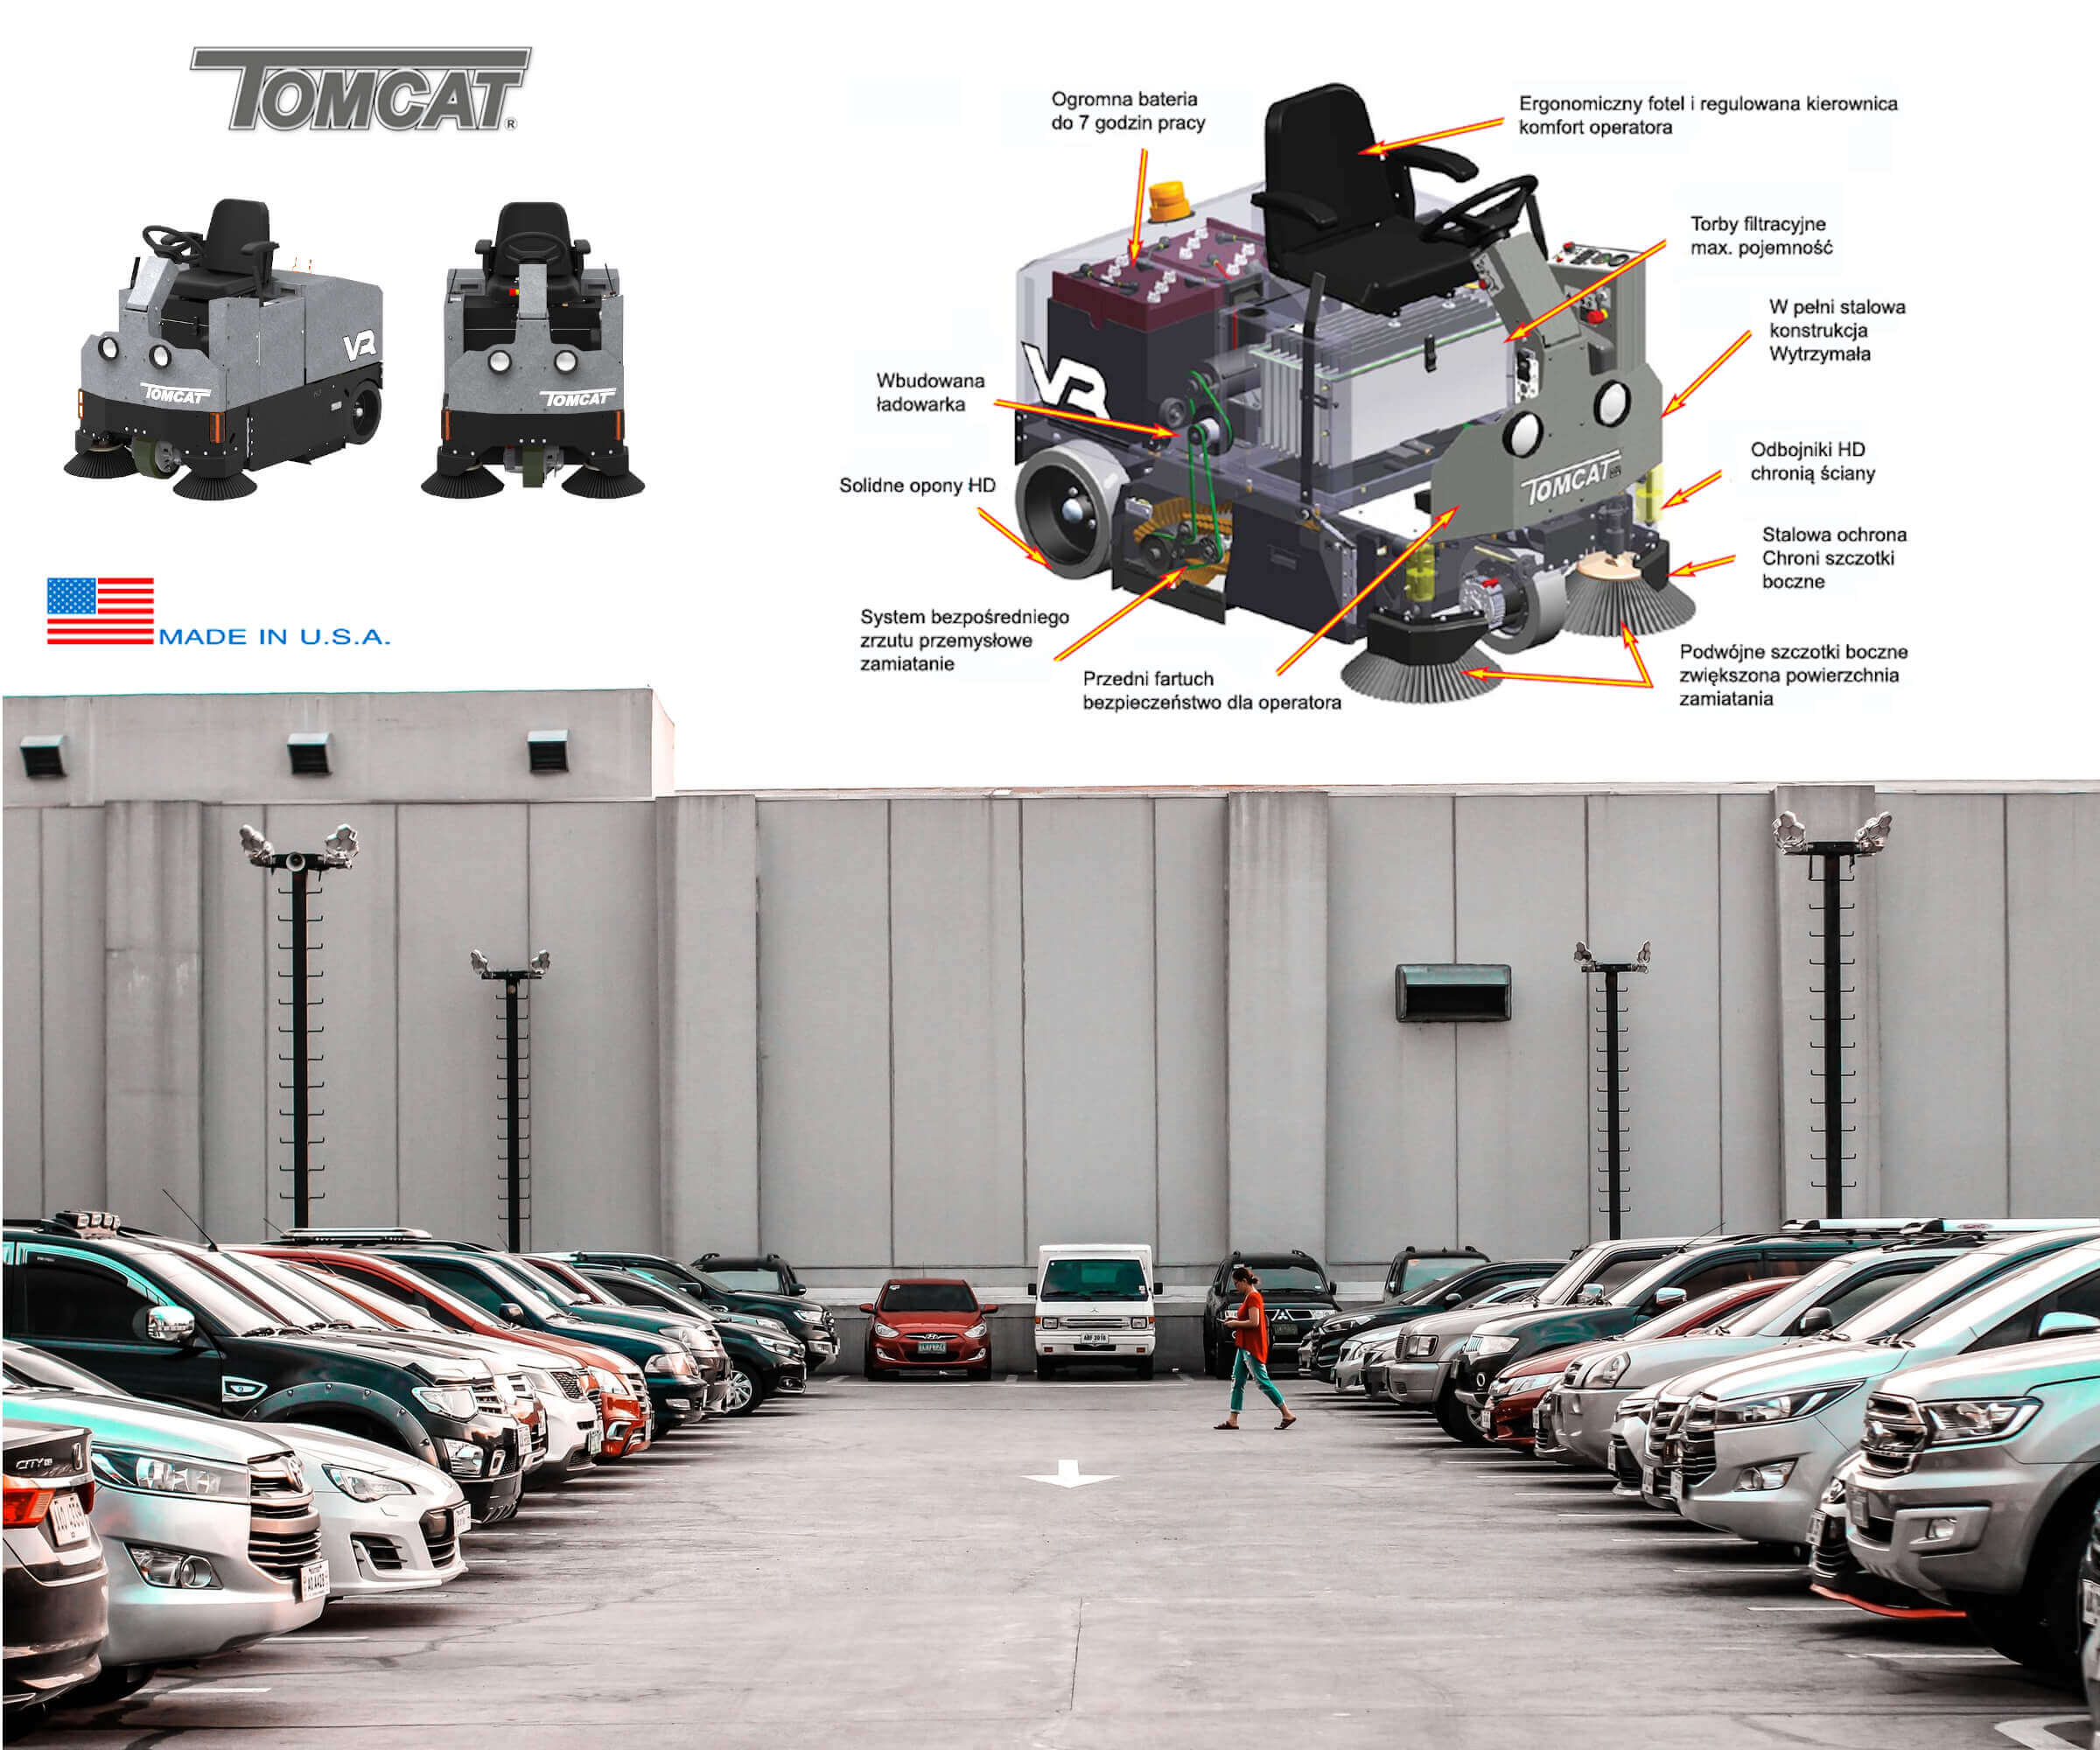 Oferta Tomcat dla przemysłu czyszczenie powierzchni parkingów